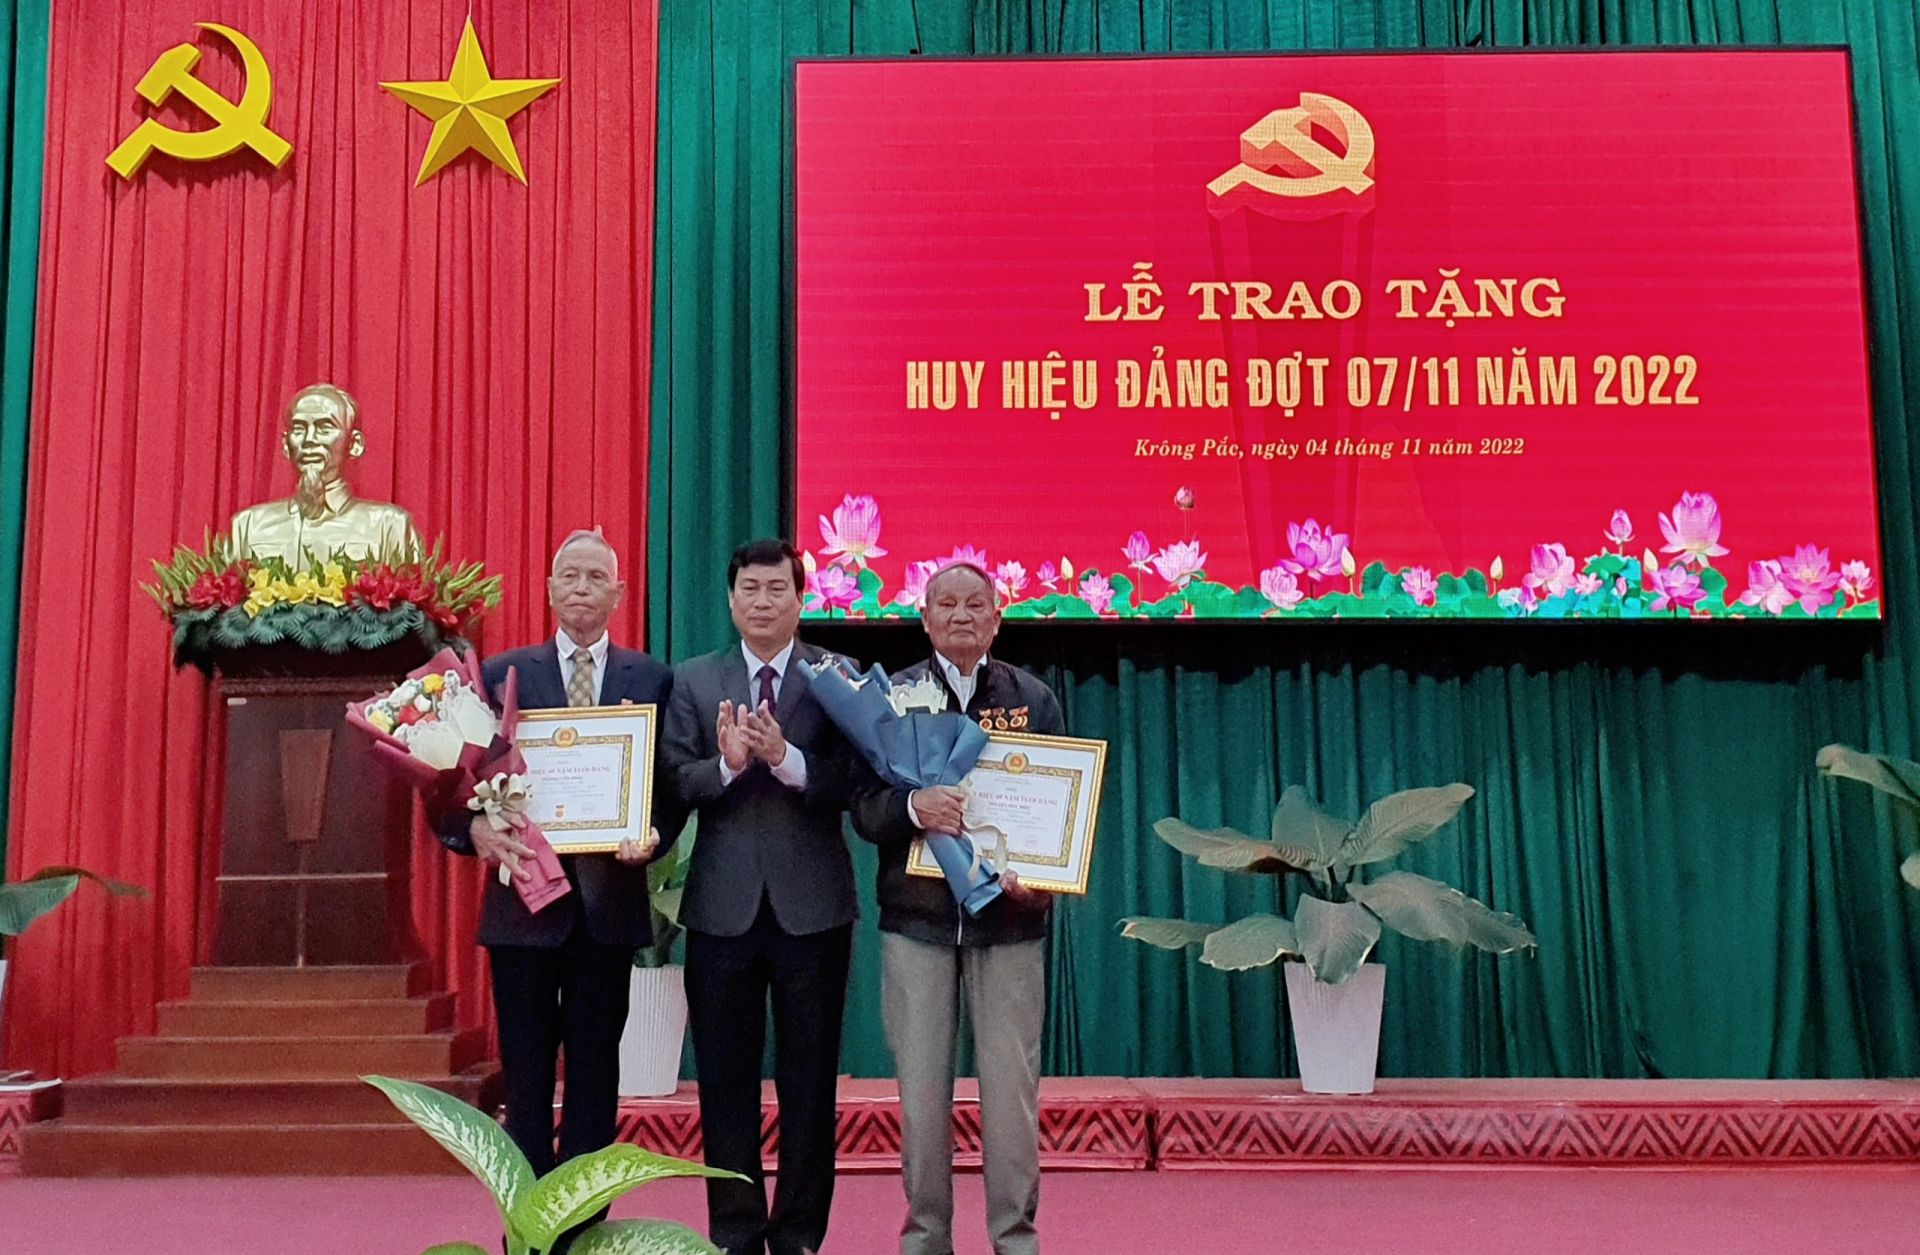 .Đồng chí Trần Hồng Tiến, Bí thư Huyện ủy Krông Pắc trao Huy hiệu 60 năm tuổi Đảng cho đảng viên Nguyễn Huy Điều, 86 tuổi và đảng viên Vương Văn Phúc, 80 tuổi.